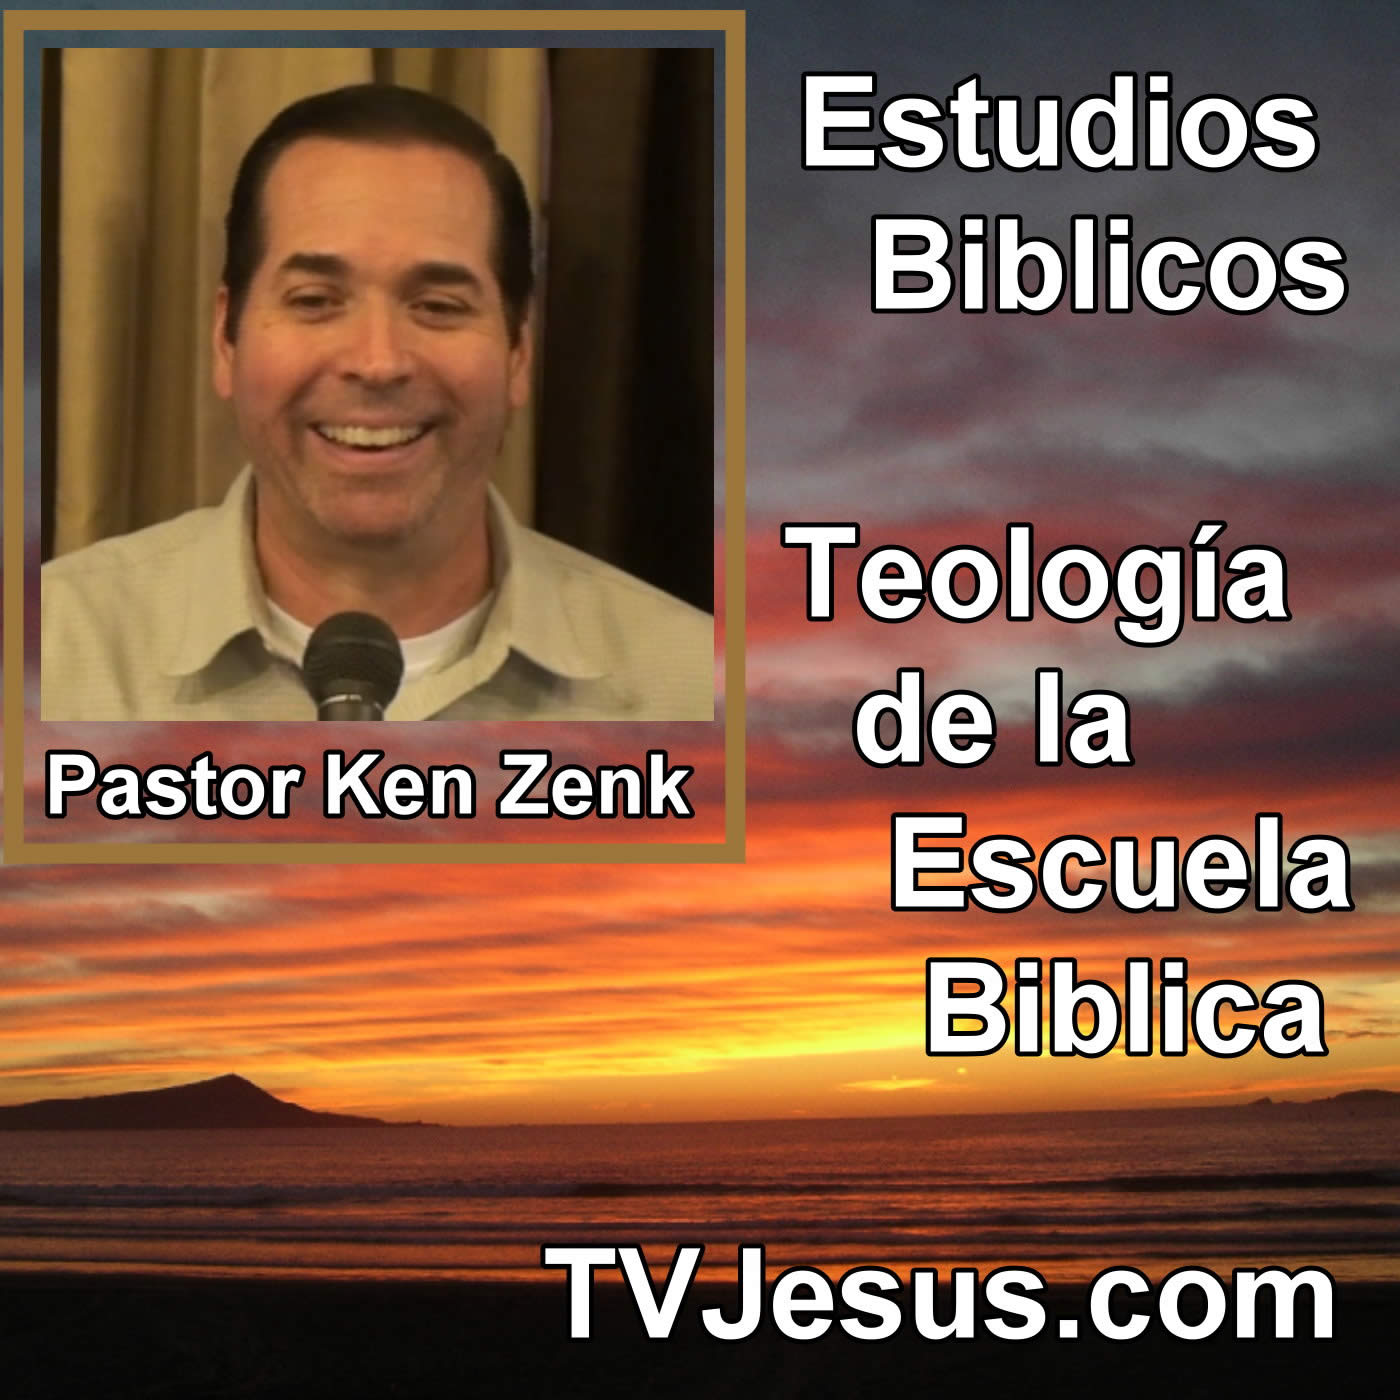 Pastor Ken Zenk - Teologia - Escuela Biblica - Sermones de Cristo, Biblia, Cristiano